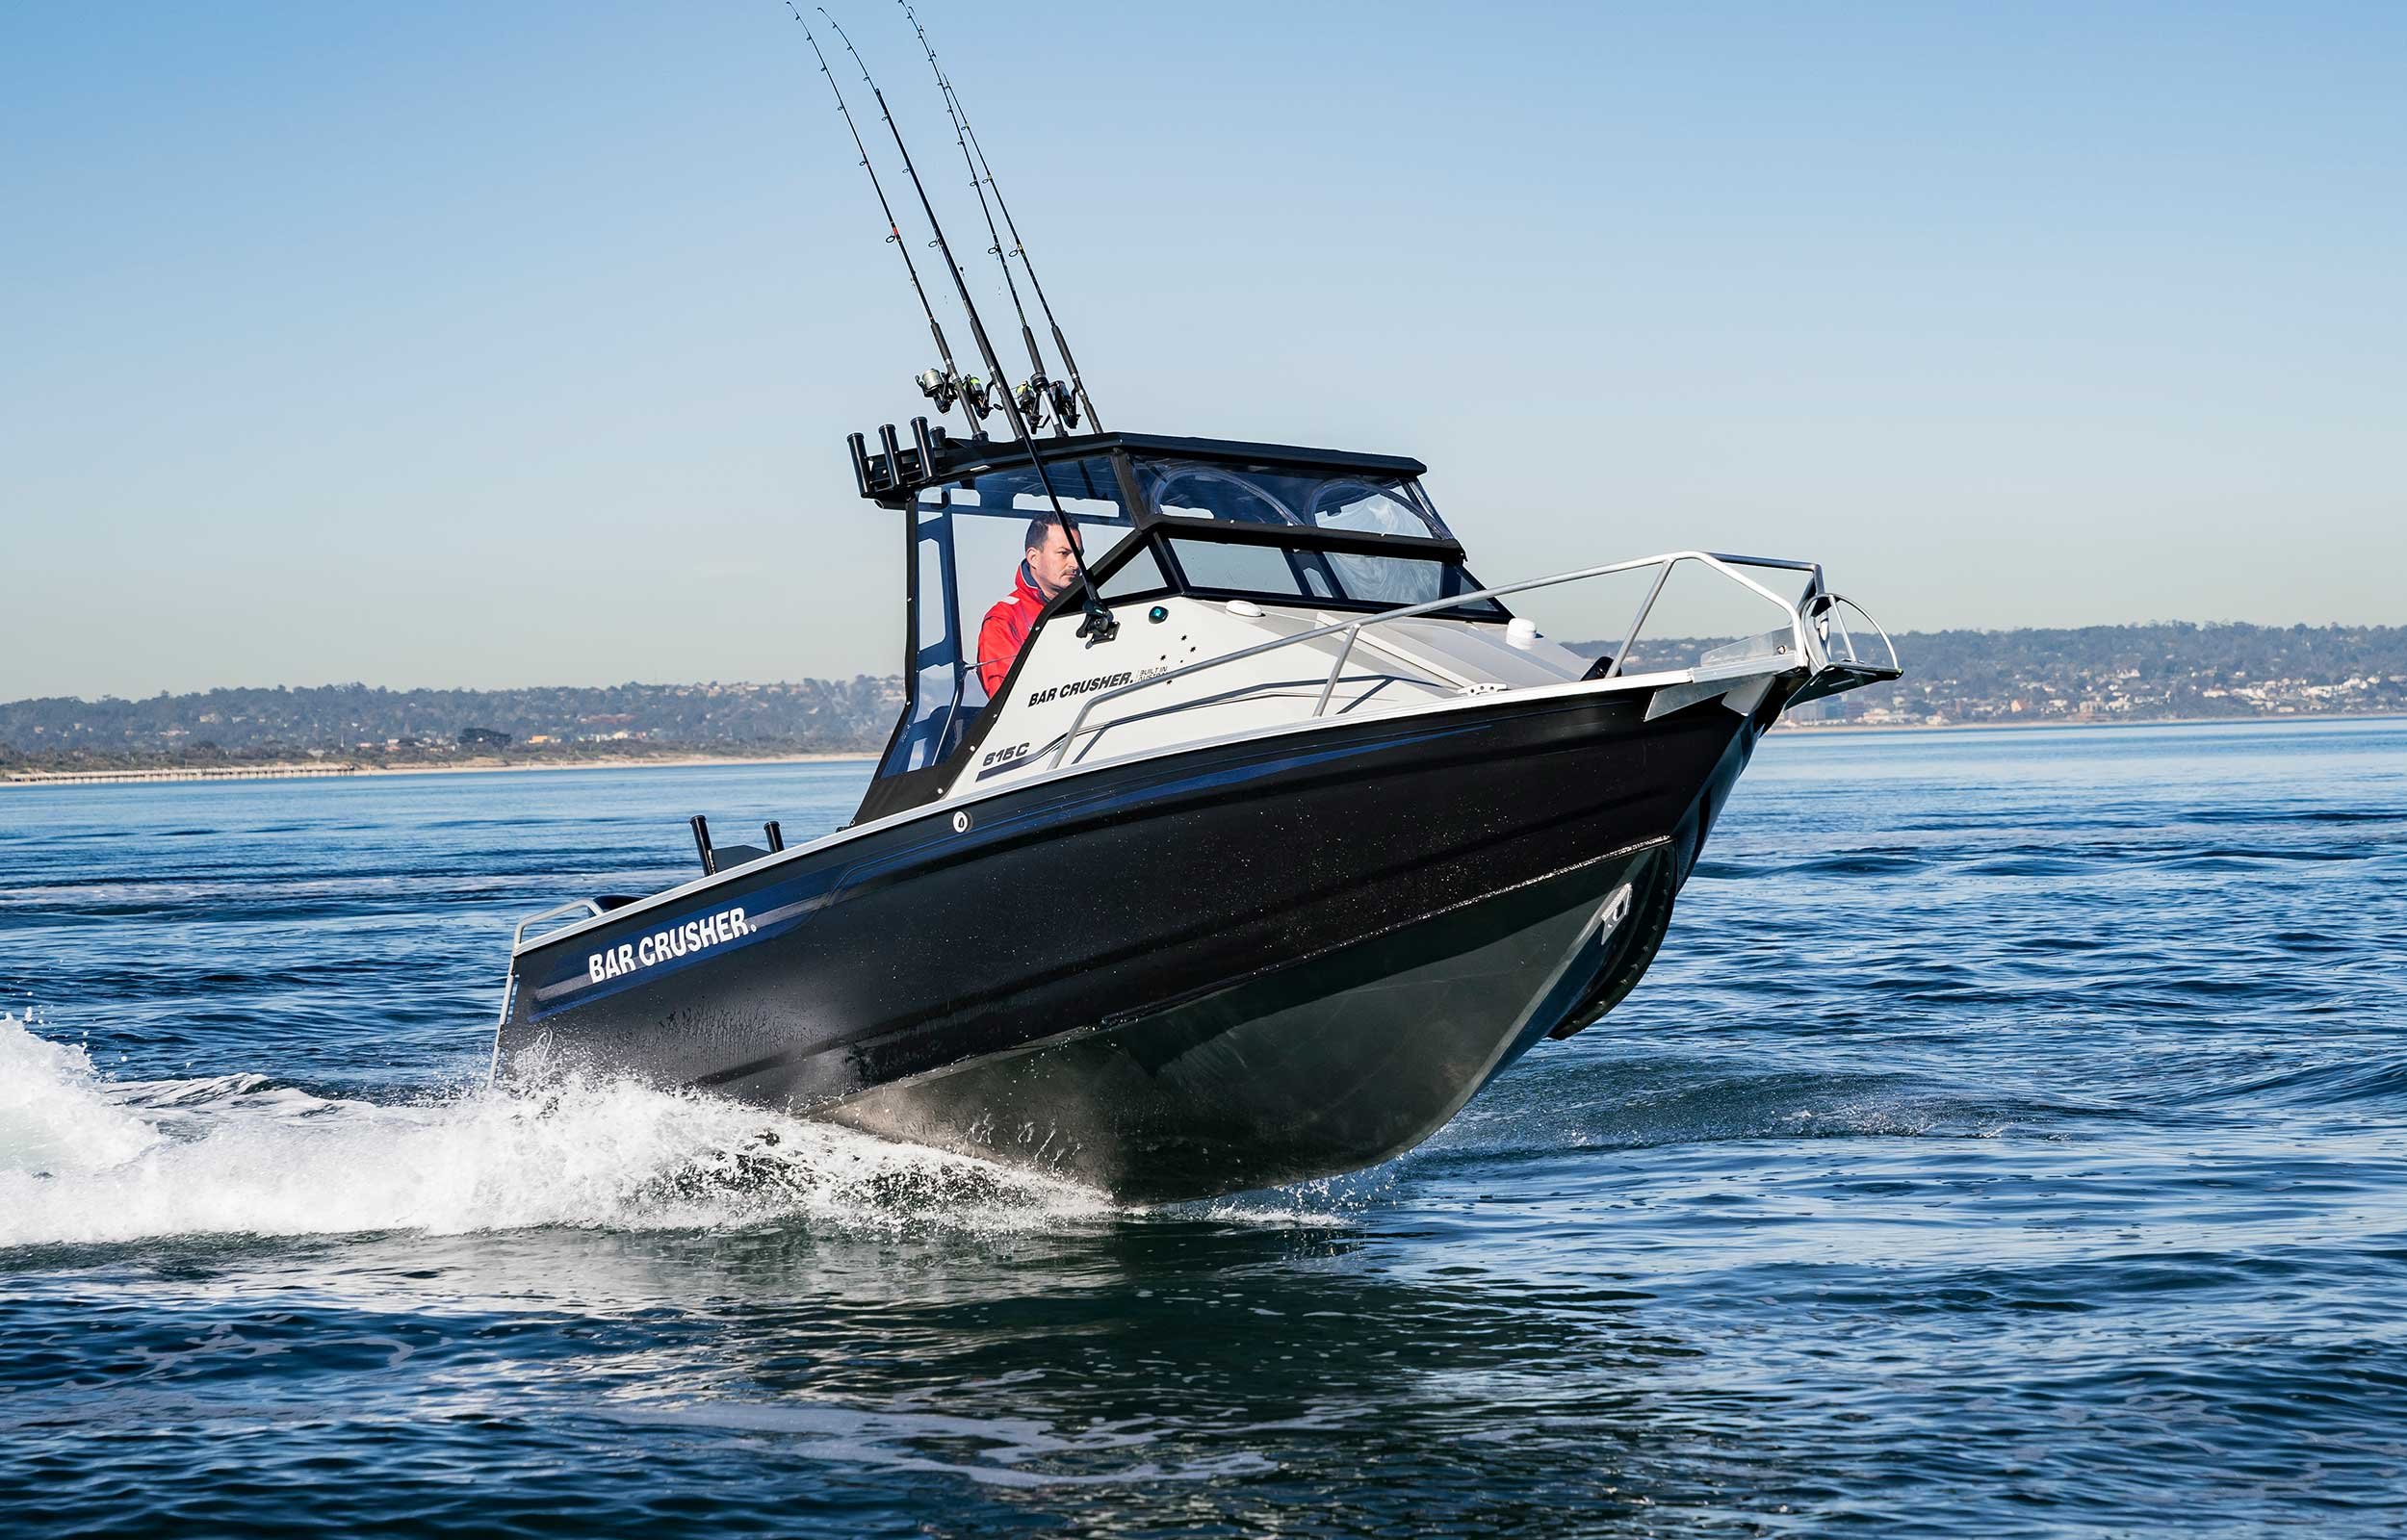 models-bar-crusher-615c-plate-aluminium-fishing-boat-2019-web-8